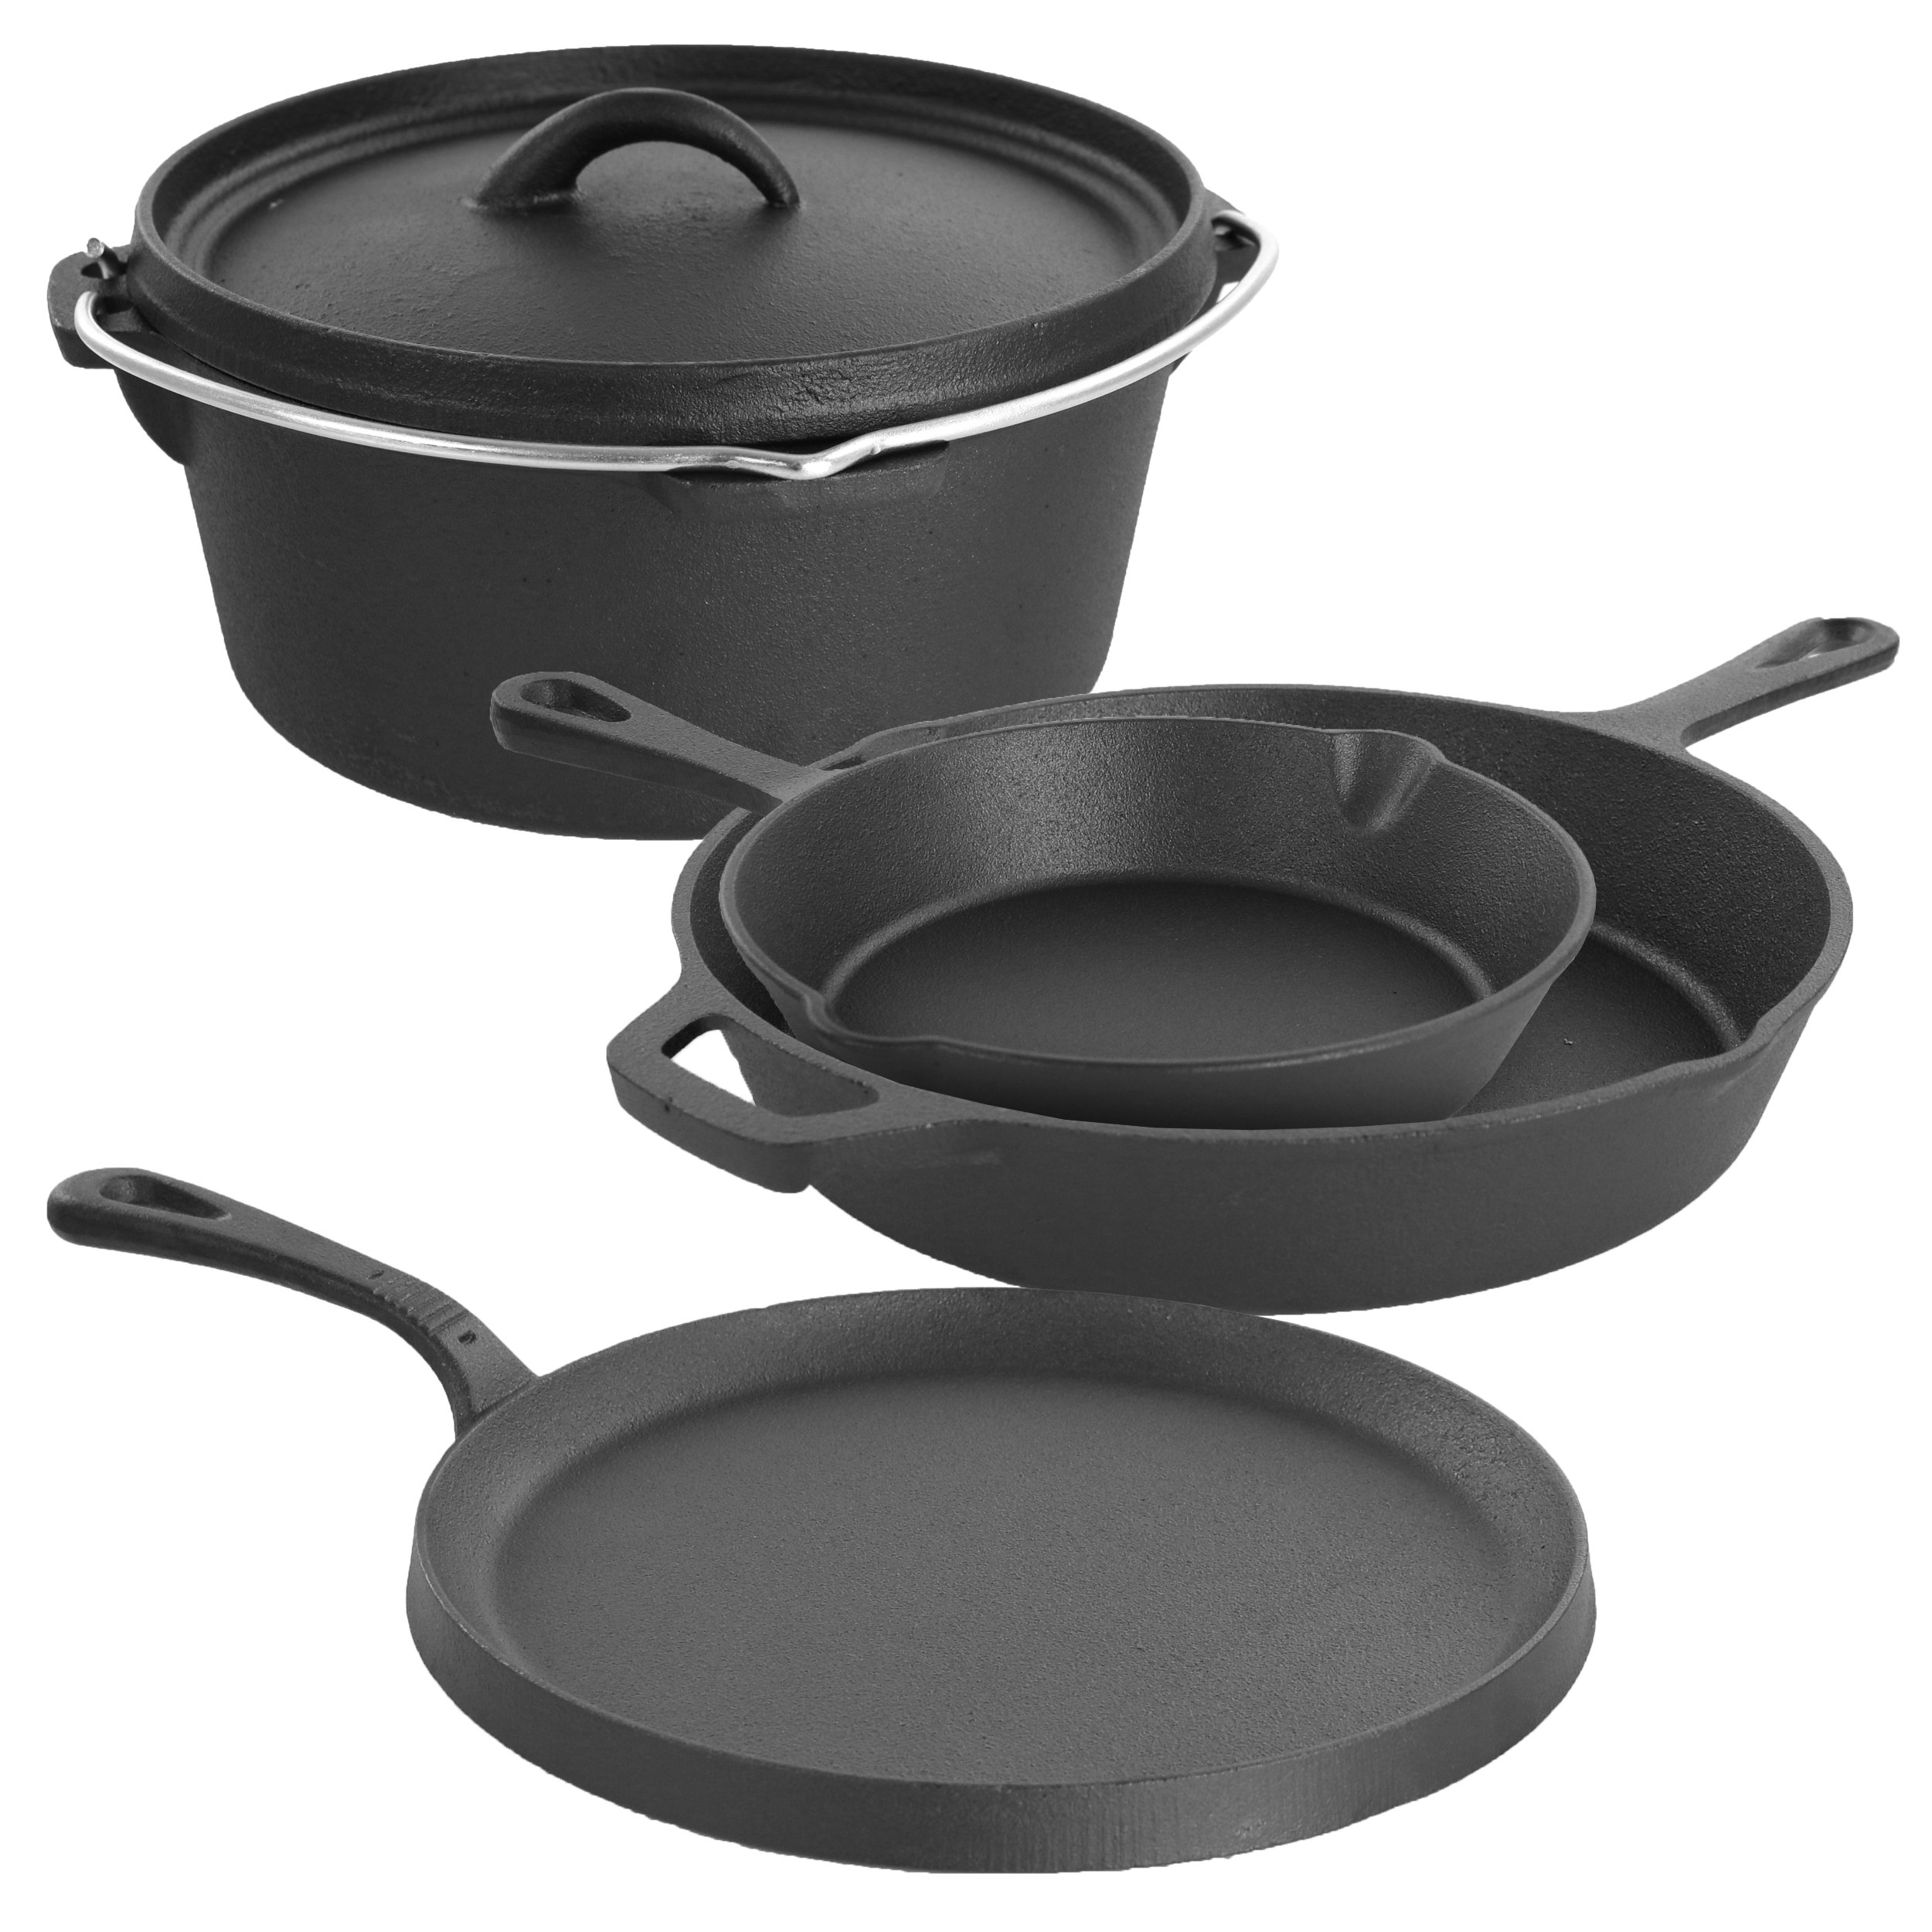 https://assets.wfcdn.com/im/46246865/compr-r85/1269/126980690/5-piece-cast-iron-cookware-set.jpg